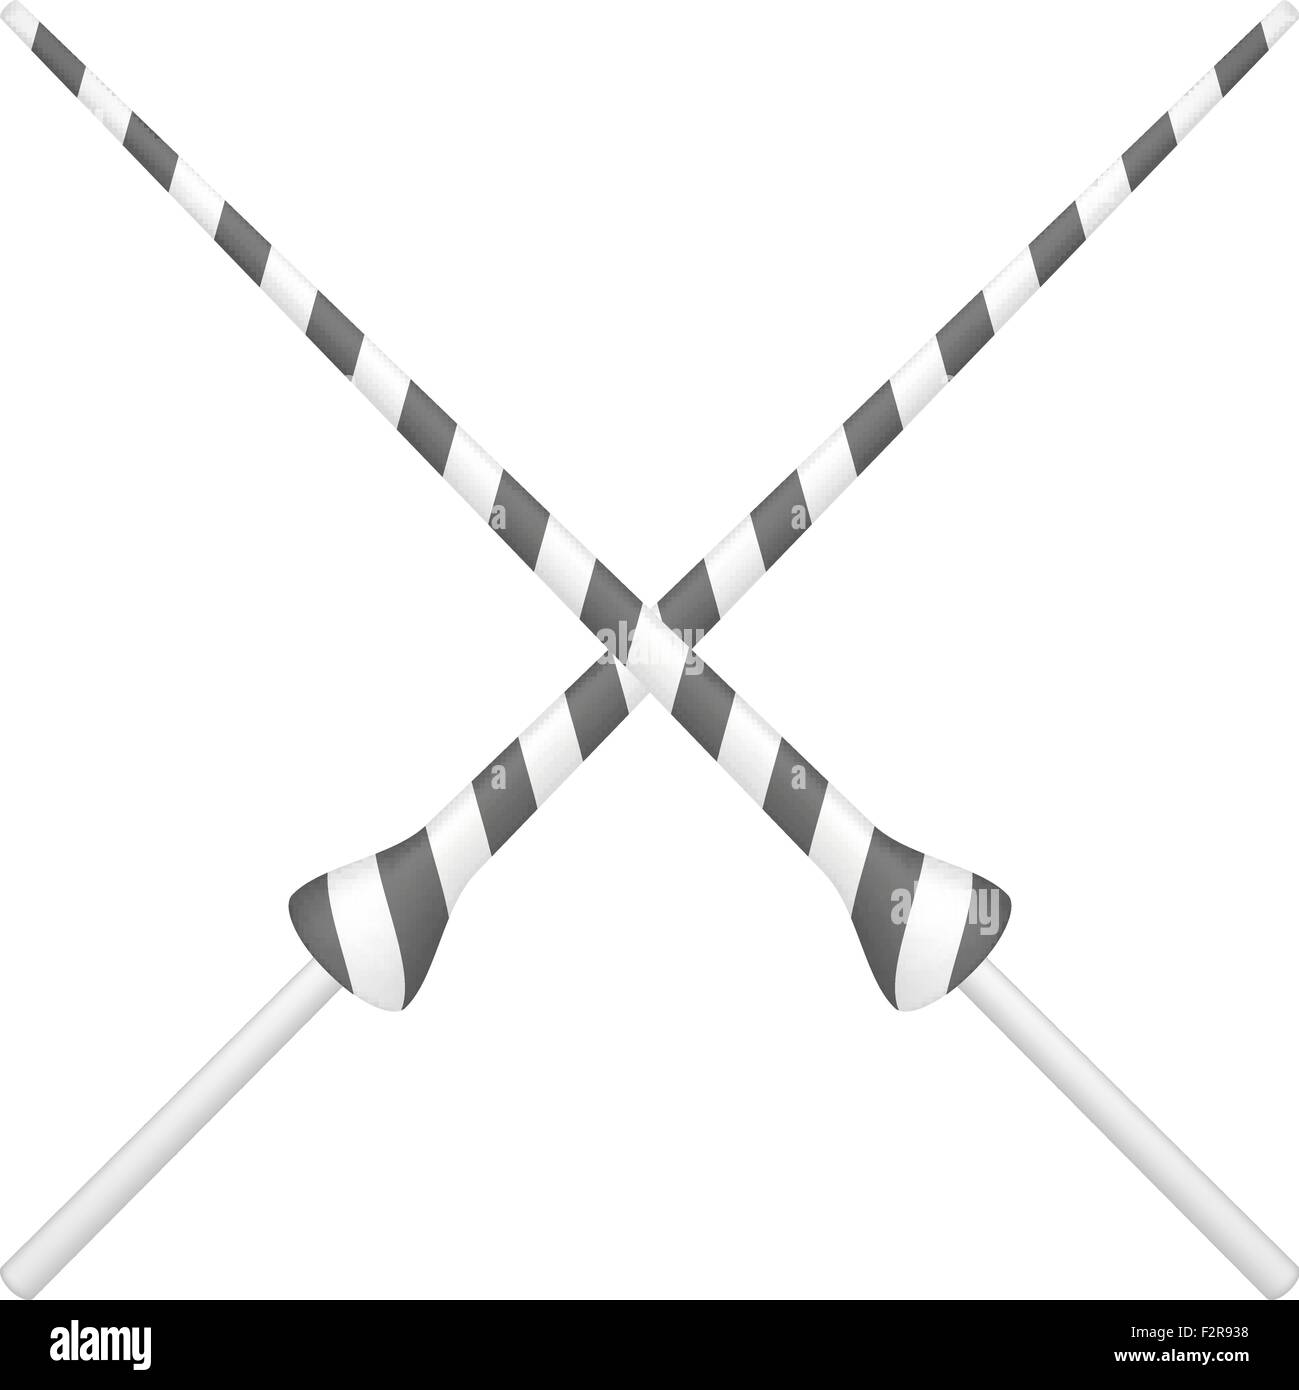 Zwei gekreuzte Lanzen in schwarz und weiß Stock Vektor